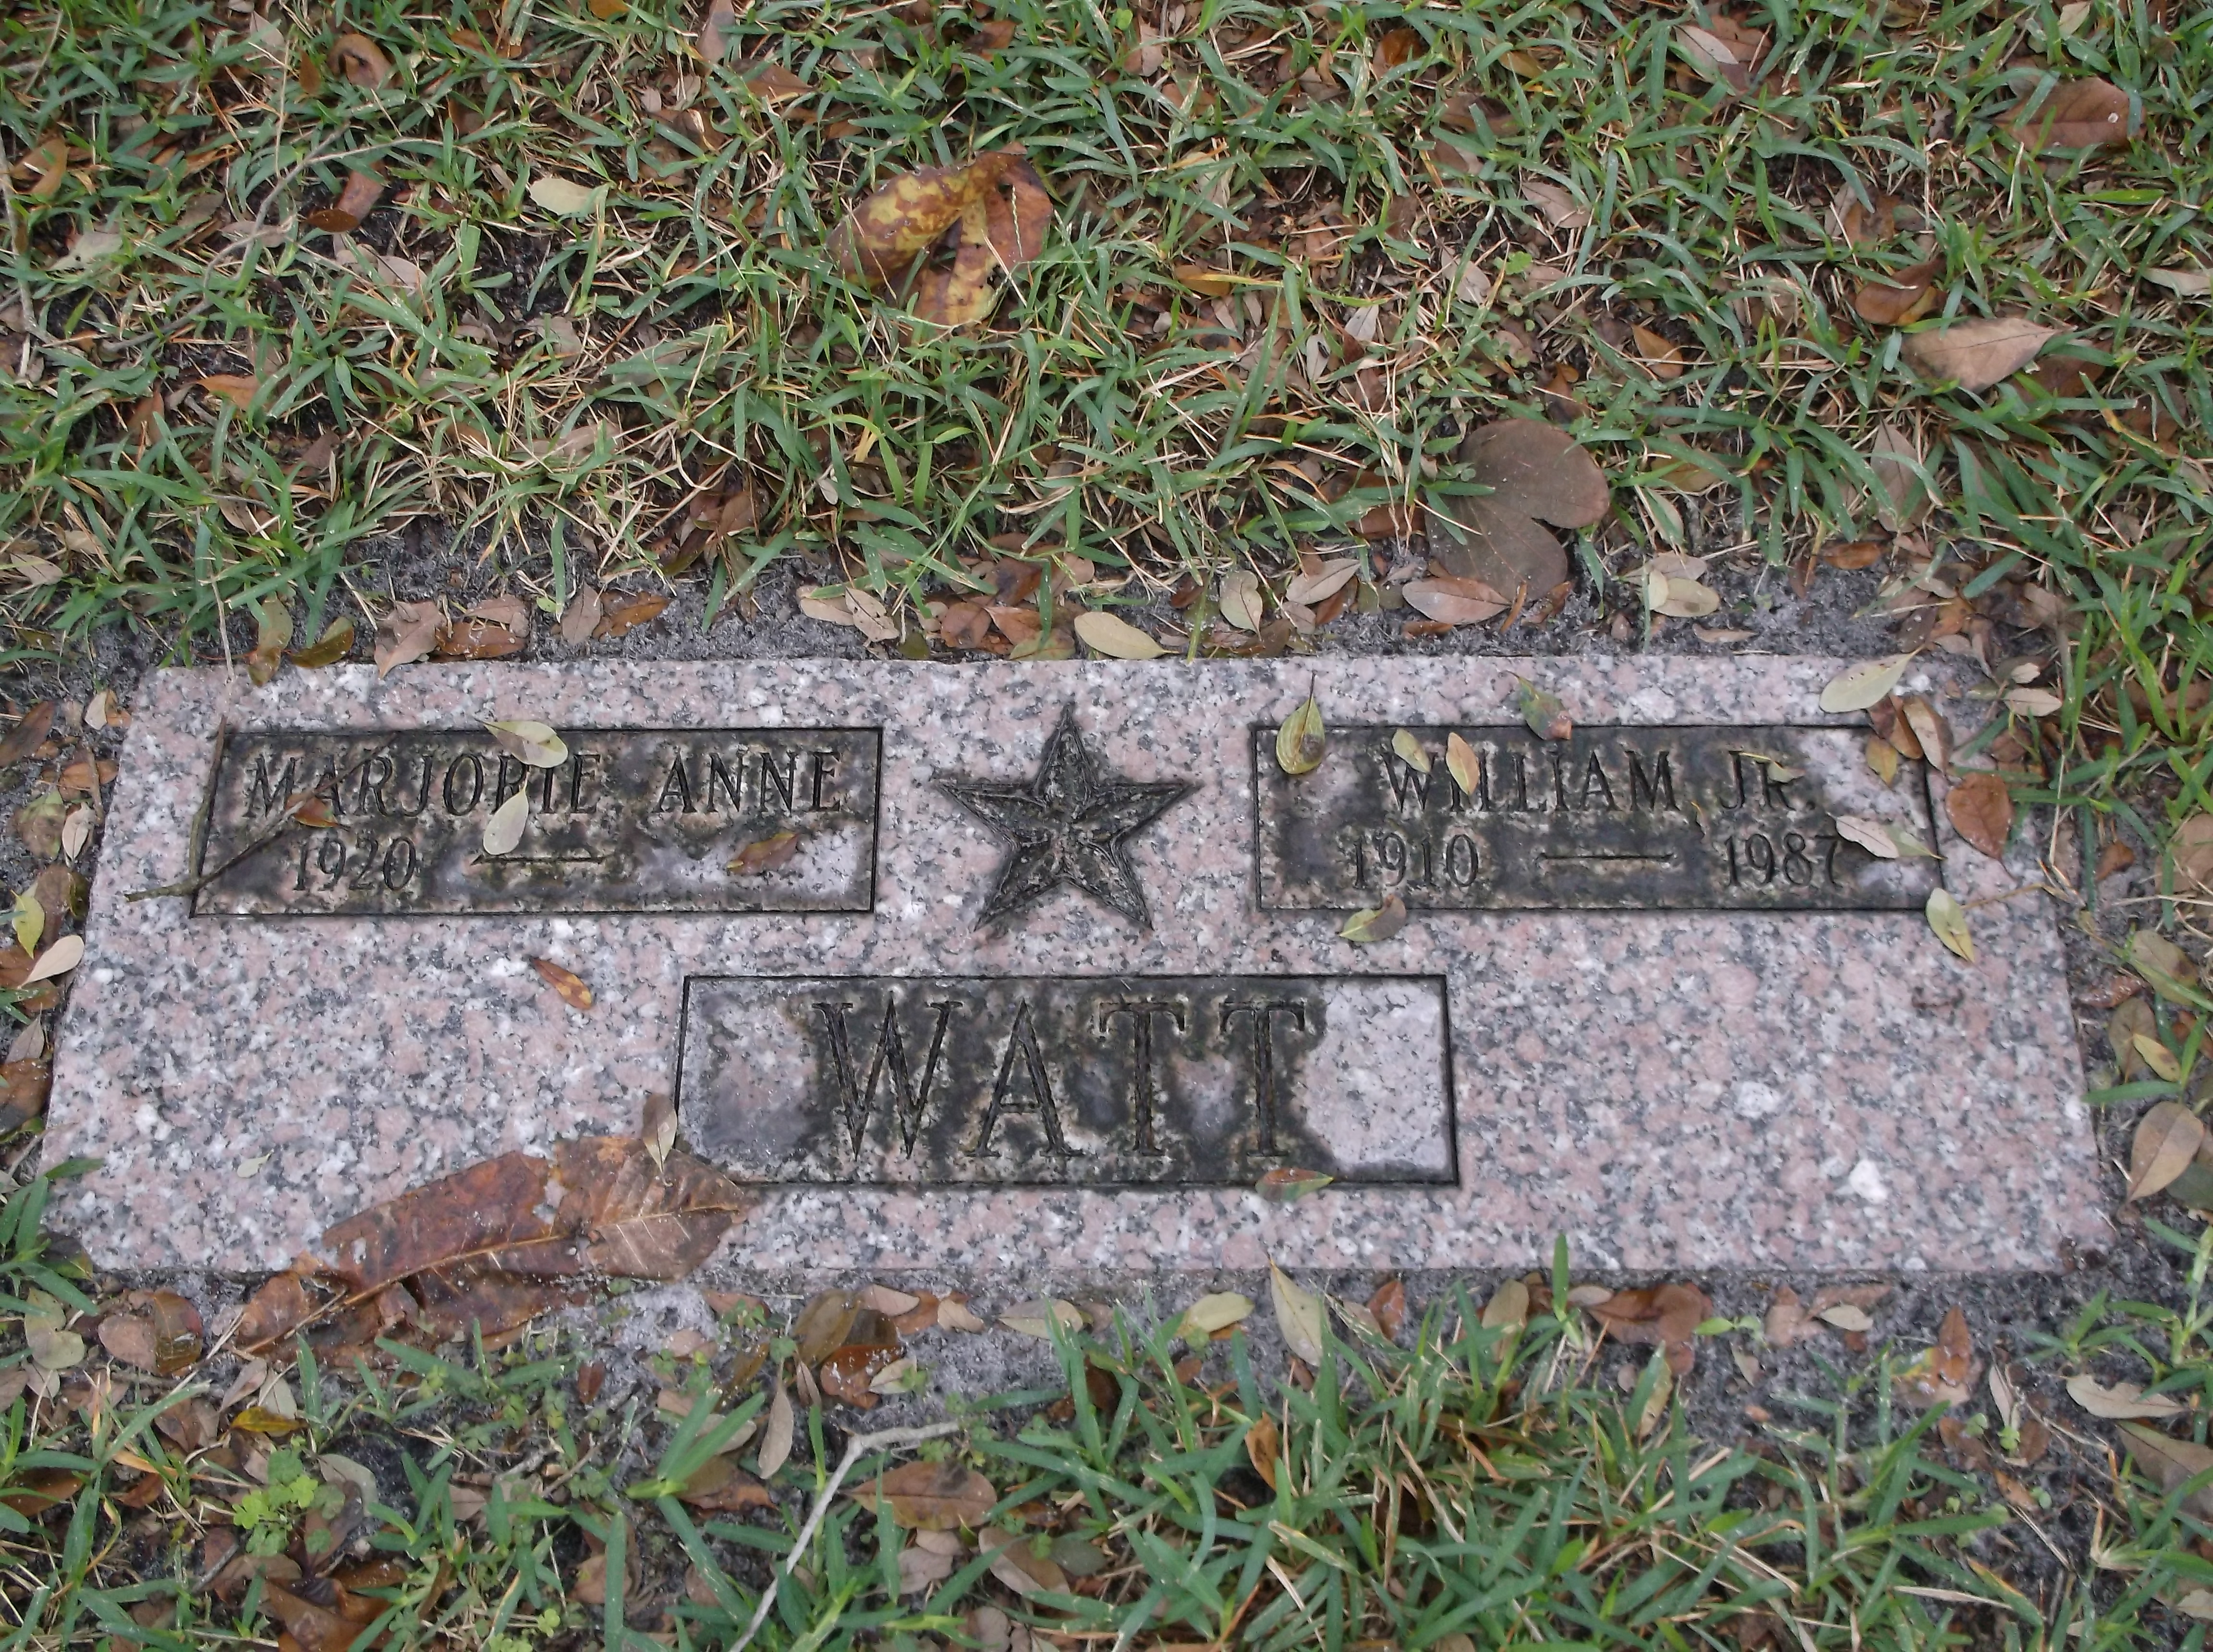 William Watt, Jr